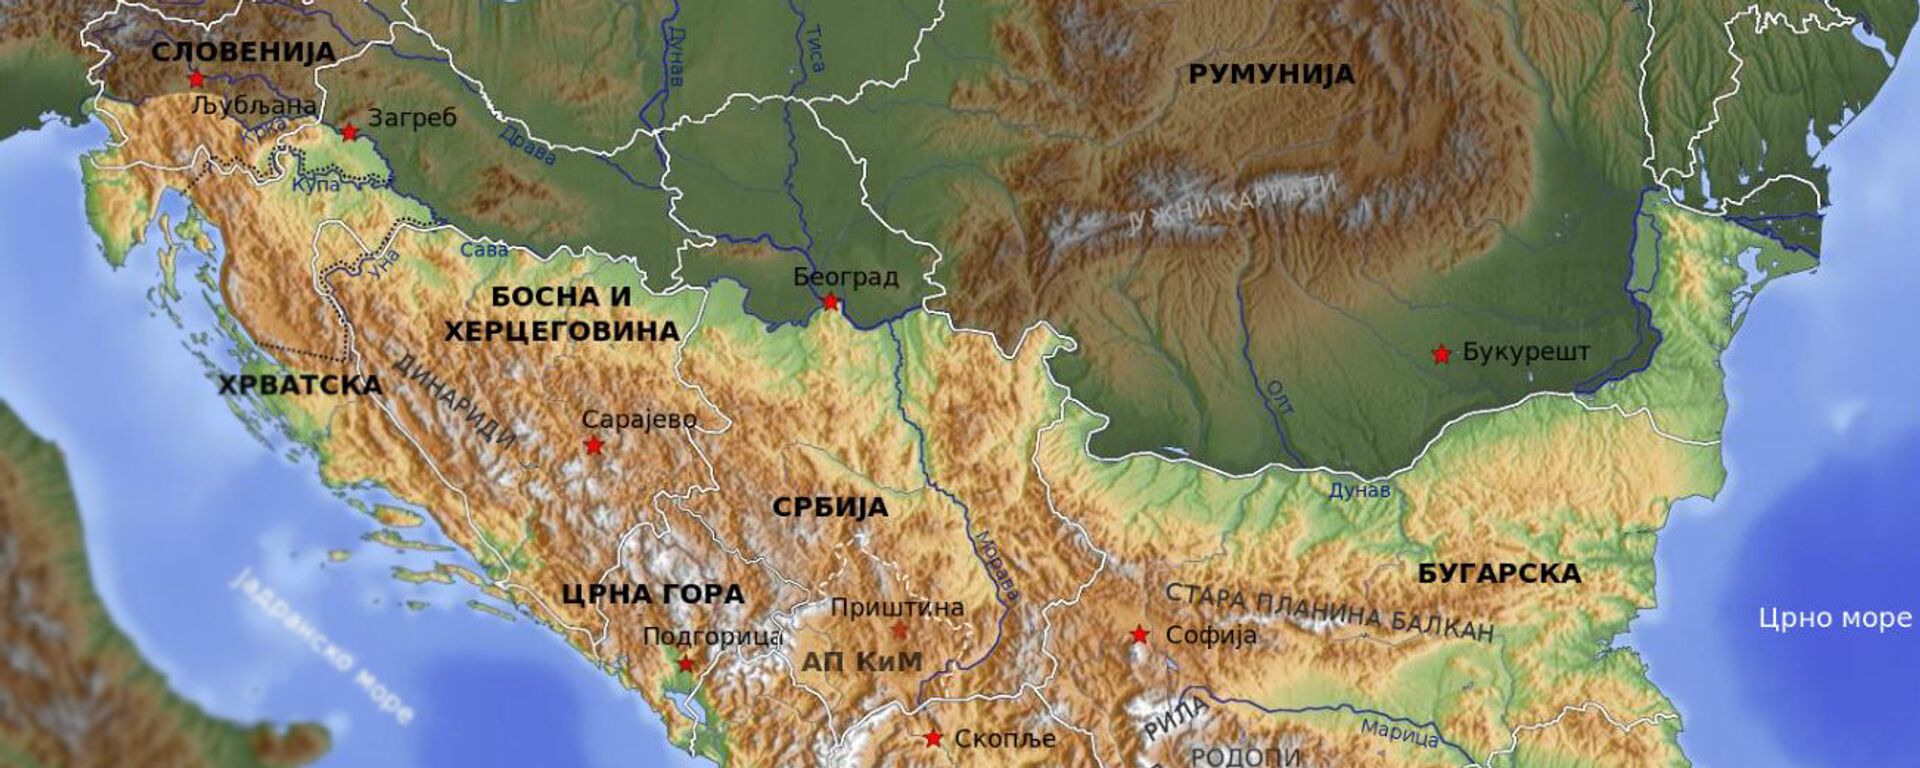 Mapa Balkana - Sputnik Srbija, 1920, 11.05.2018